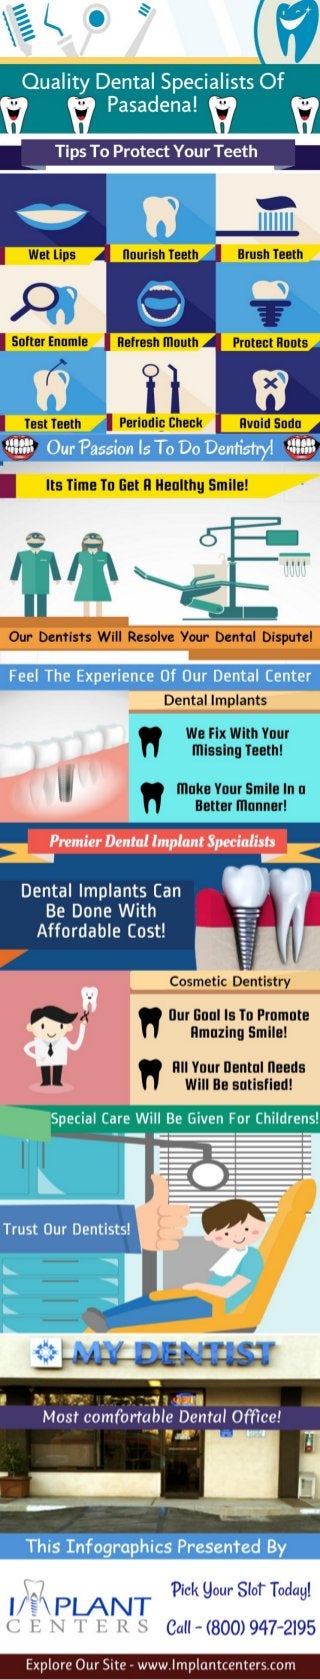 Dental Implants Centers in Pasadena